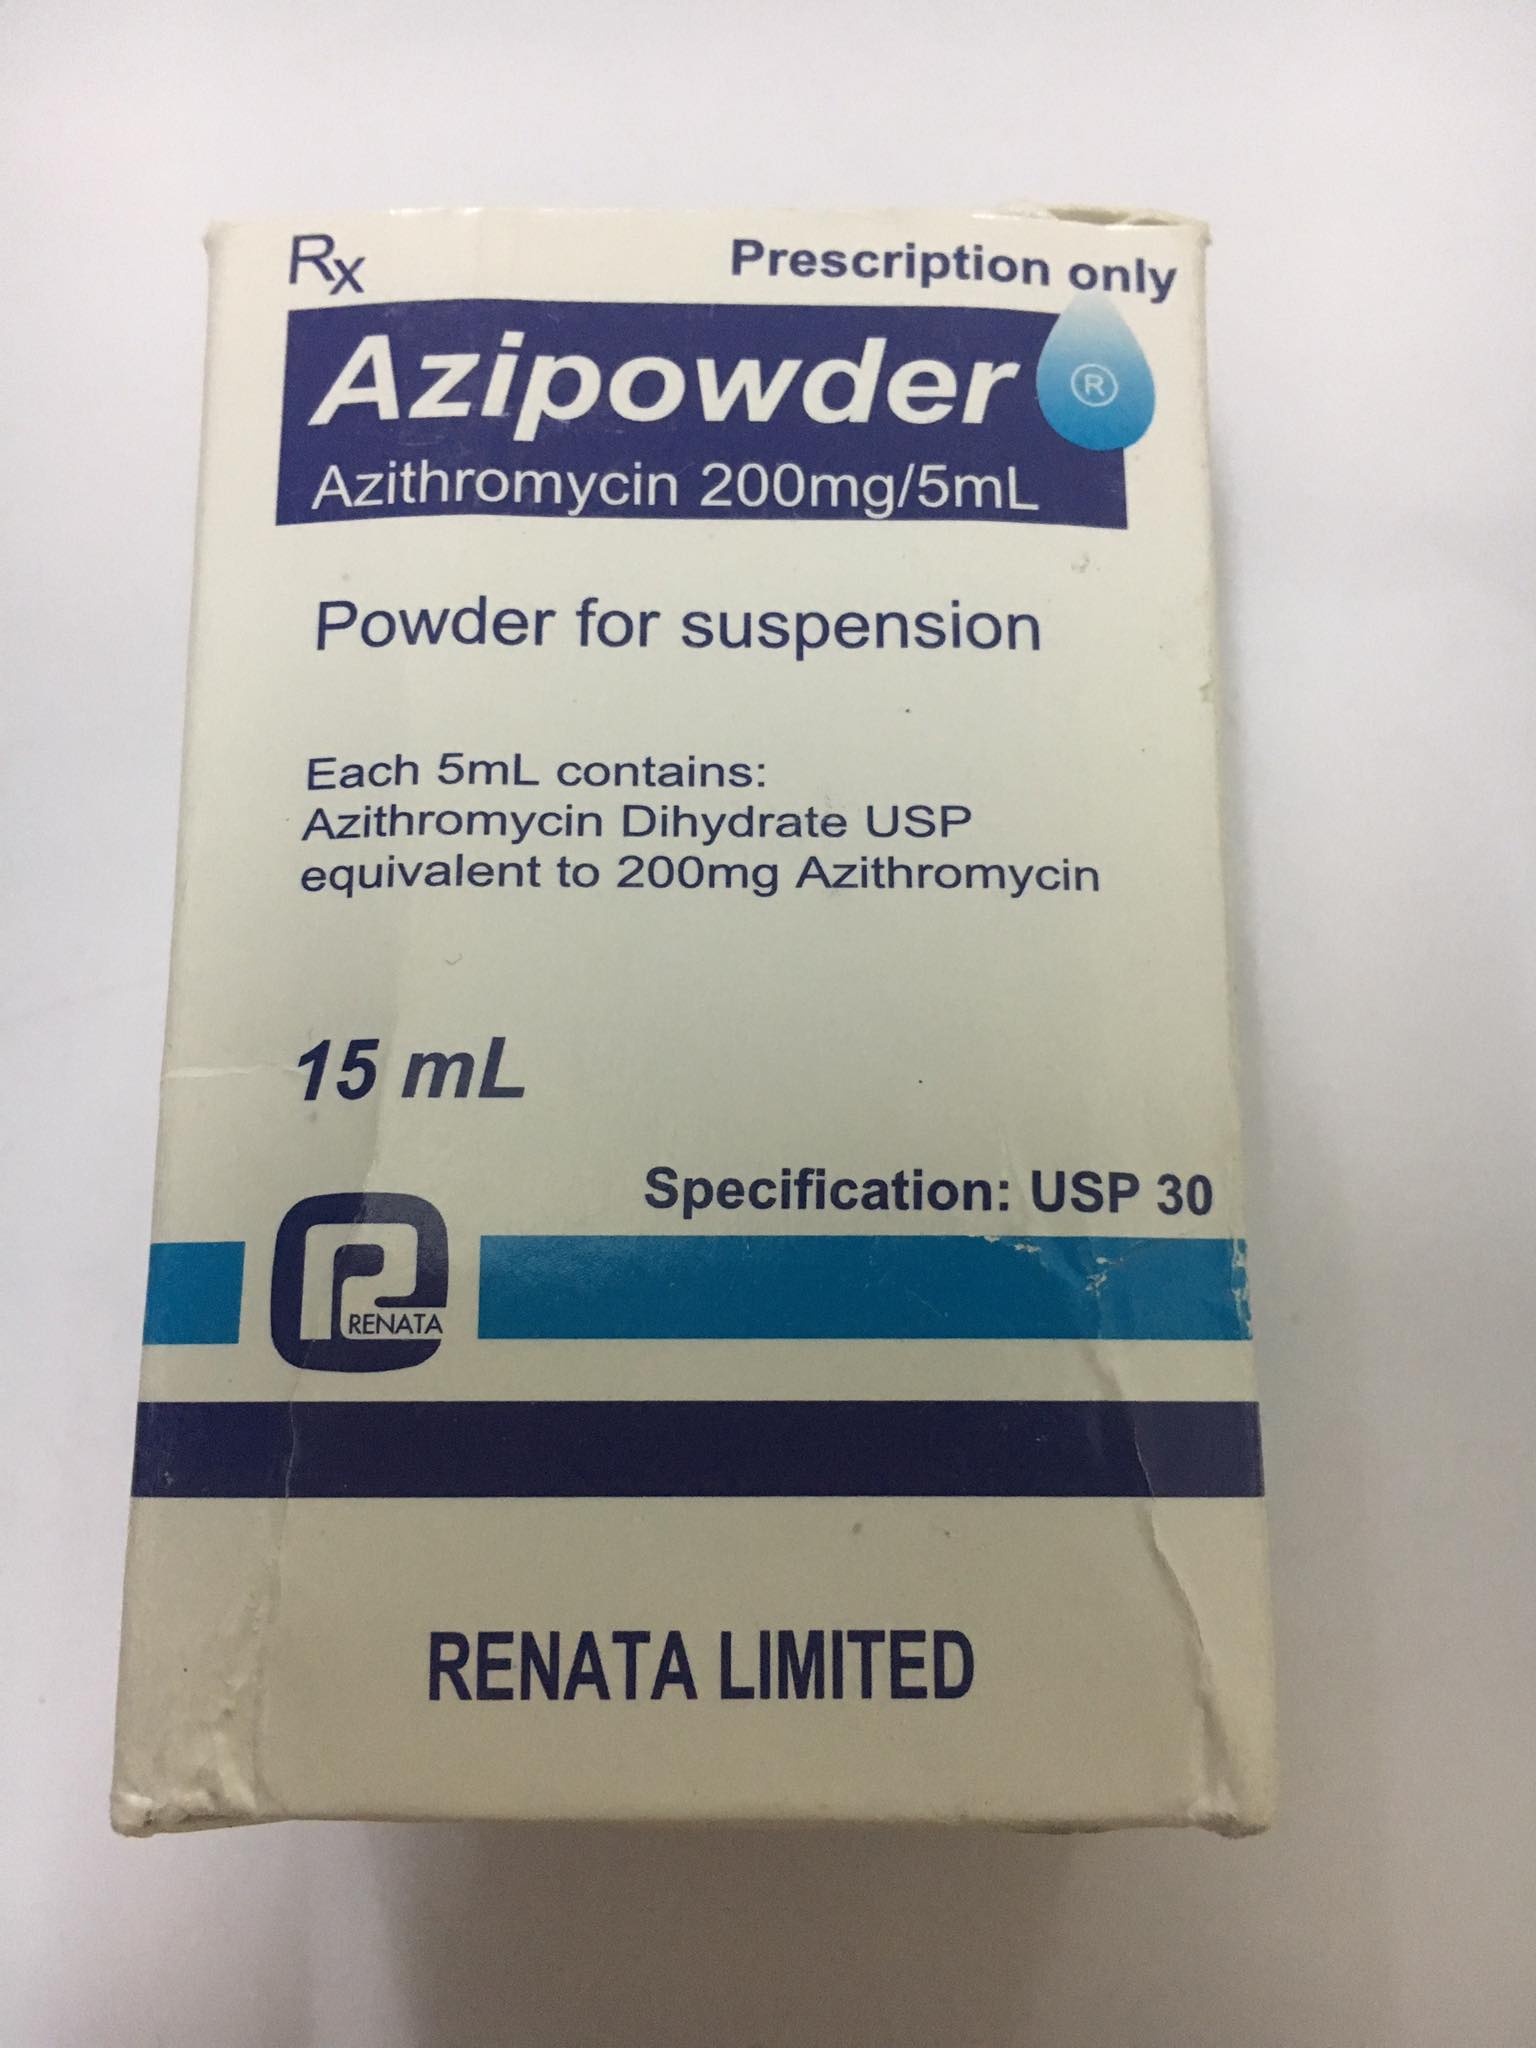 Azipowder 200mg/5ml